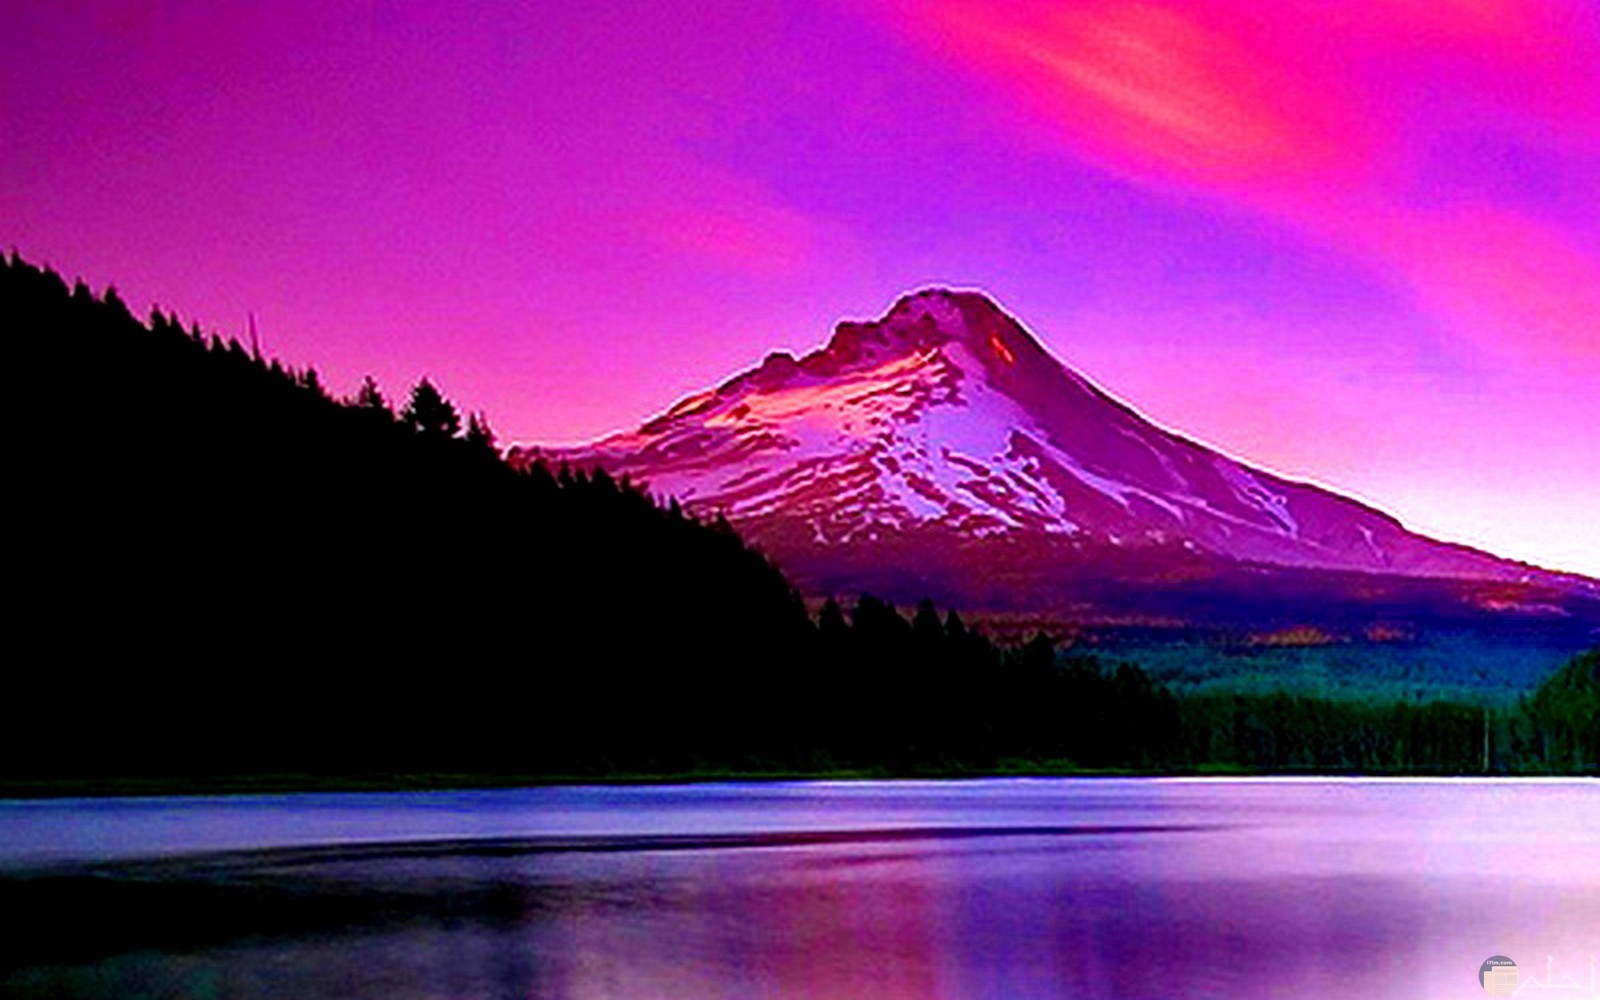 منظر طبيعي باللون وقت الغروب للجبال و البحر.